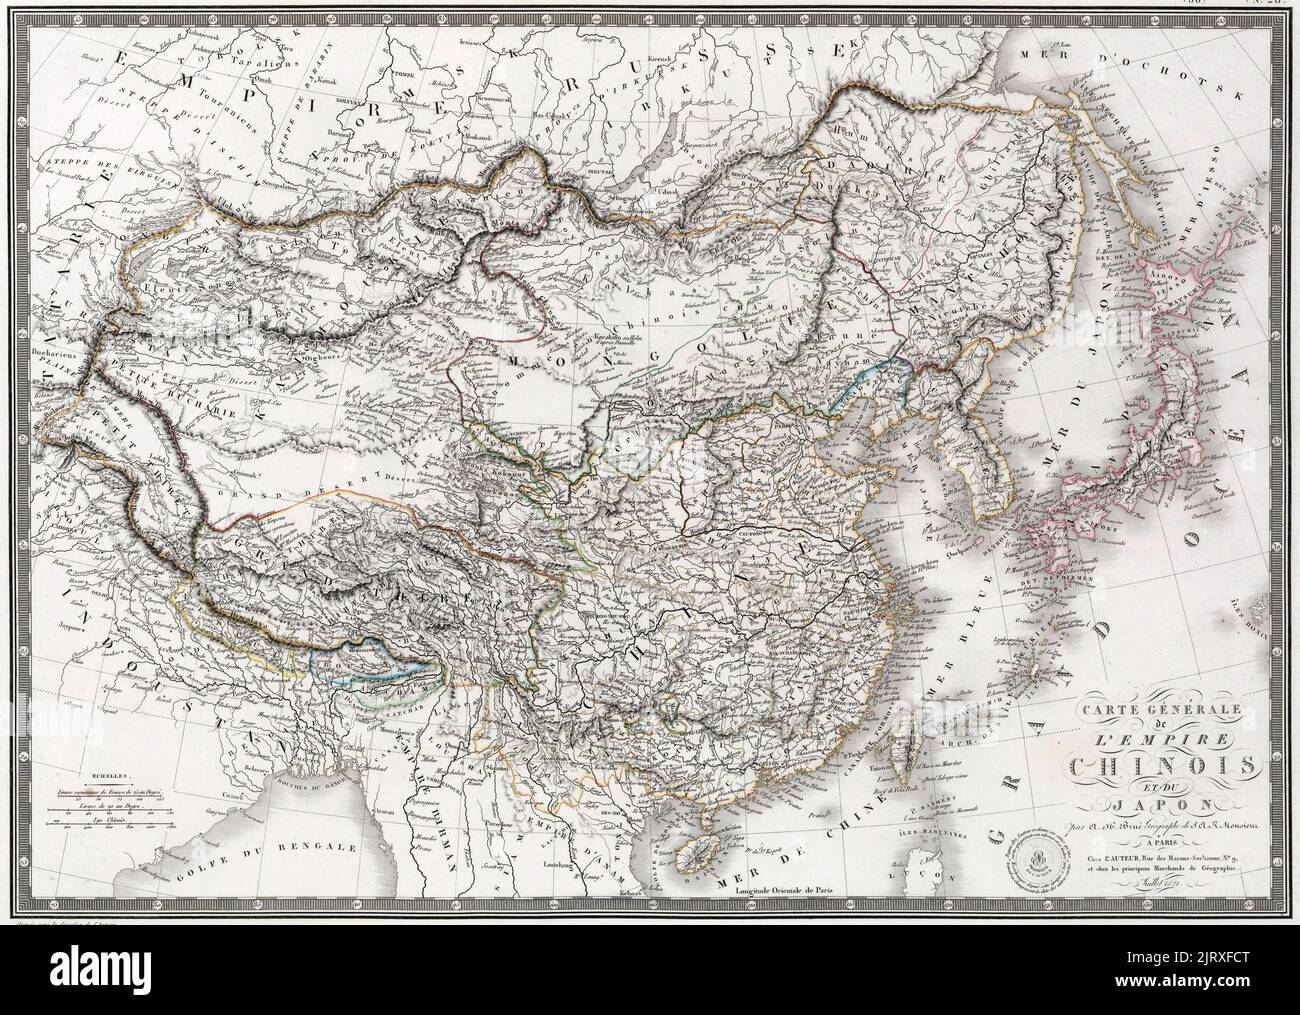 Carte générale de l'Empire chinois et du Japon : une carte de l'Empire Qing et du Japon publiée par J. Andriveau-Goujon à Paris. Notez le cours inférieur de la rivière jaune avant les inondations de 1850s, vers 1821 Banque D'Images